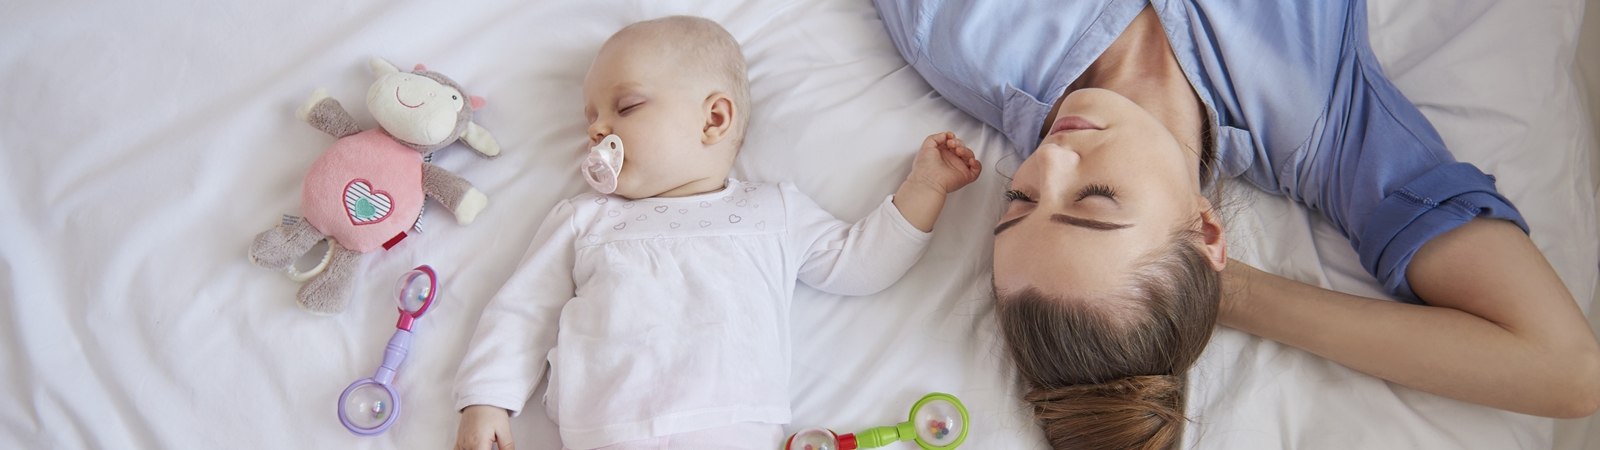 Bebeklerde Uyku Problemi: Büyüme Çağındaki Bebekler